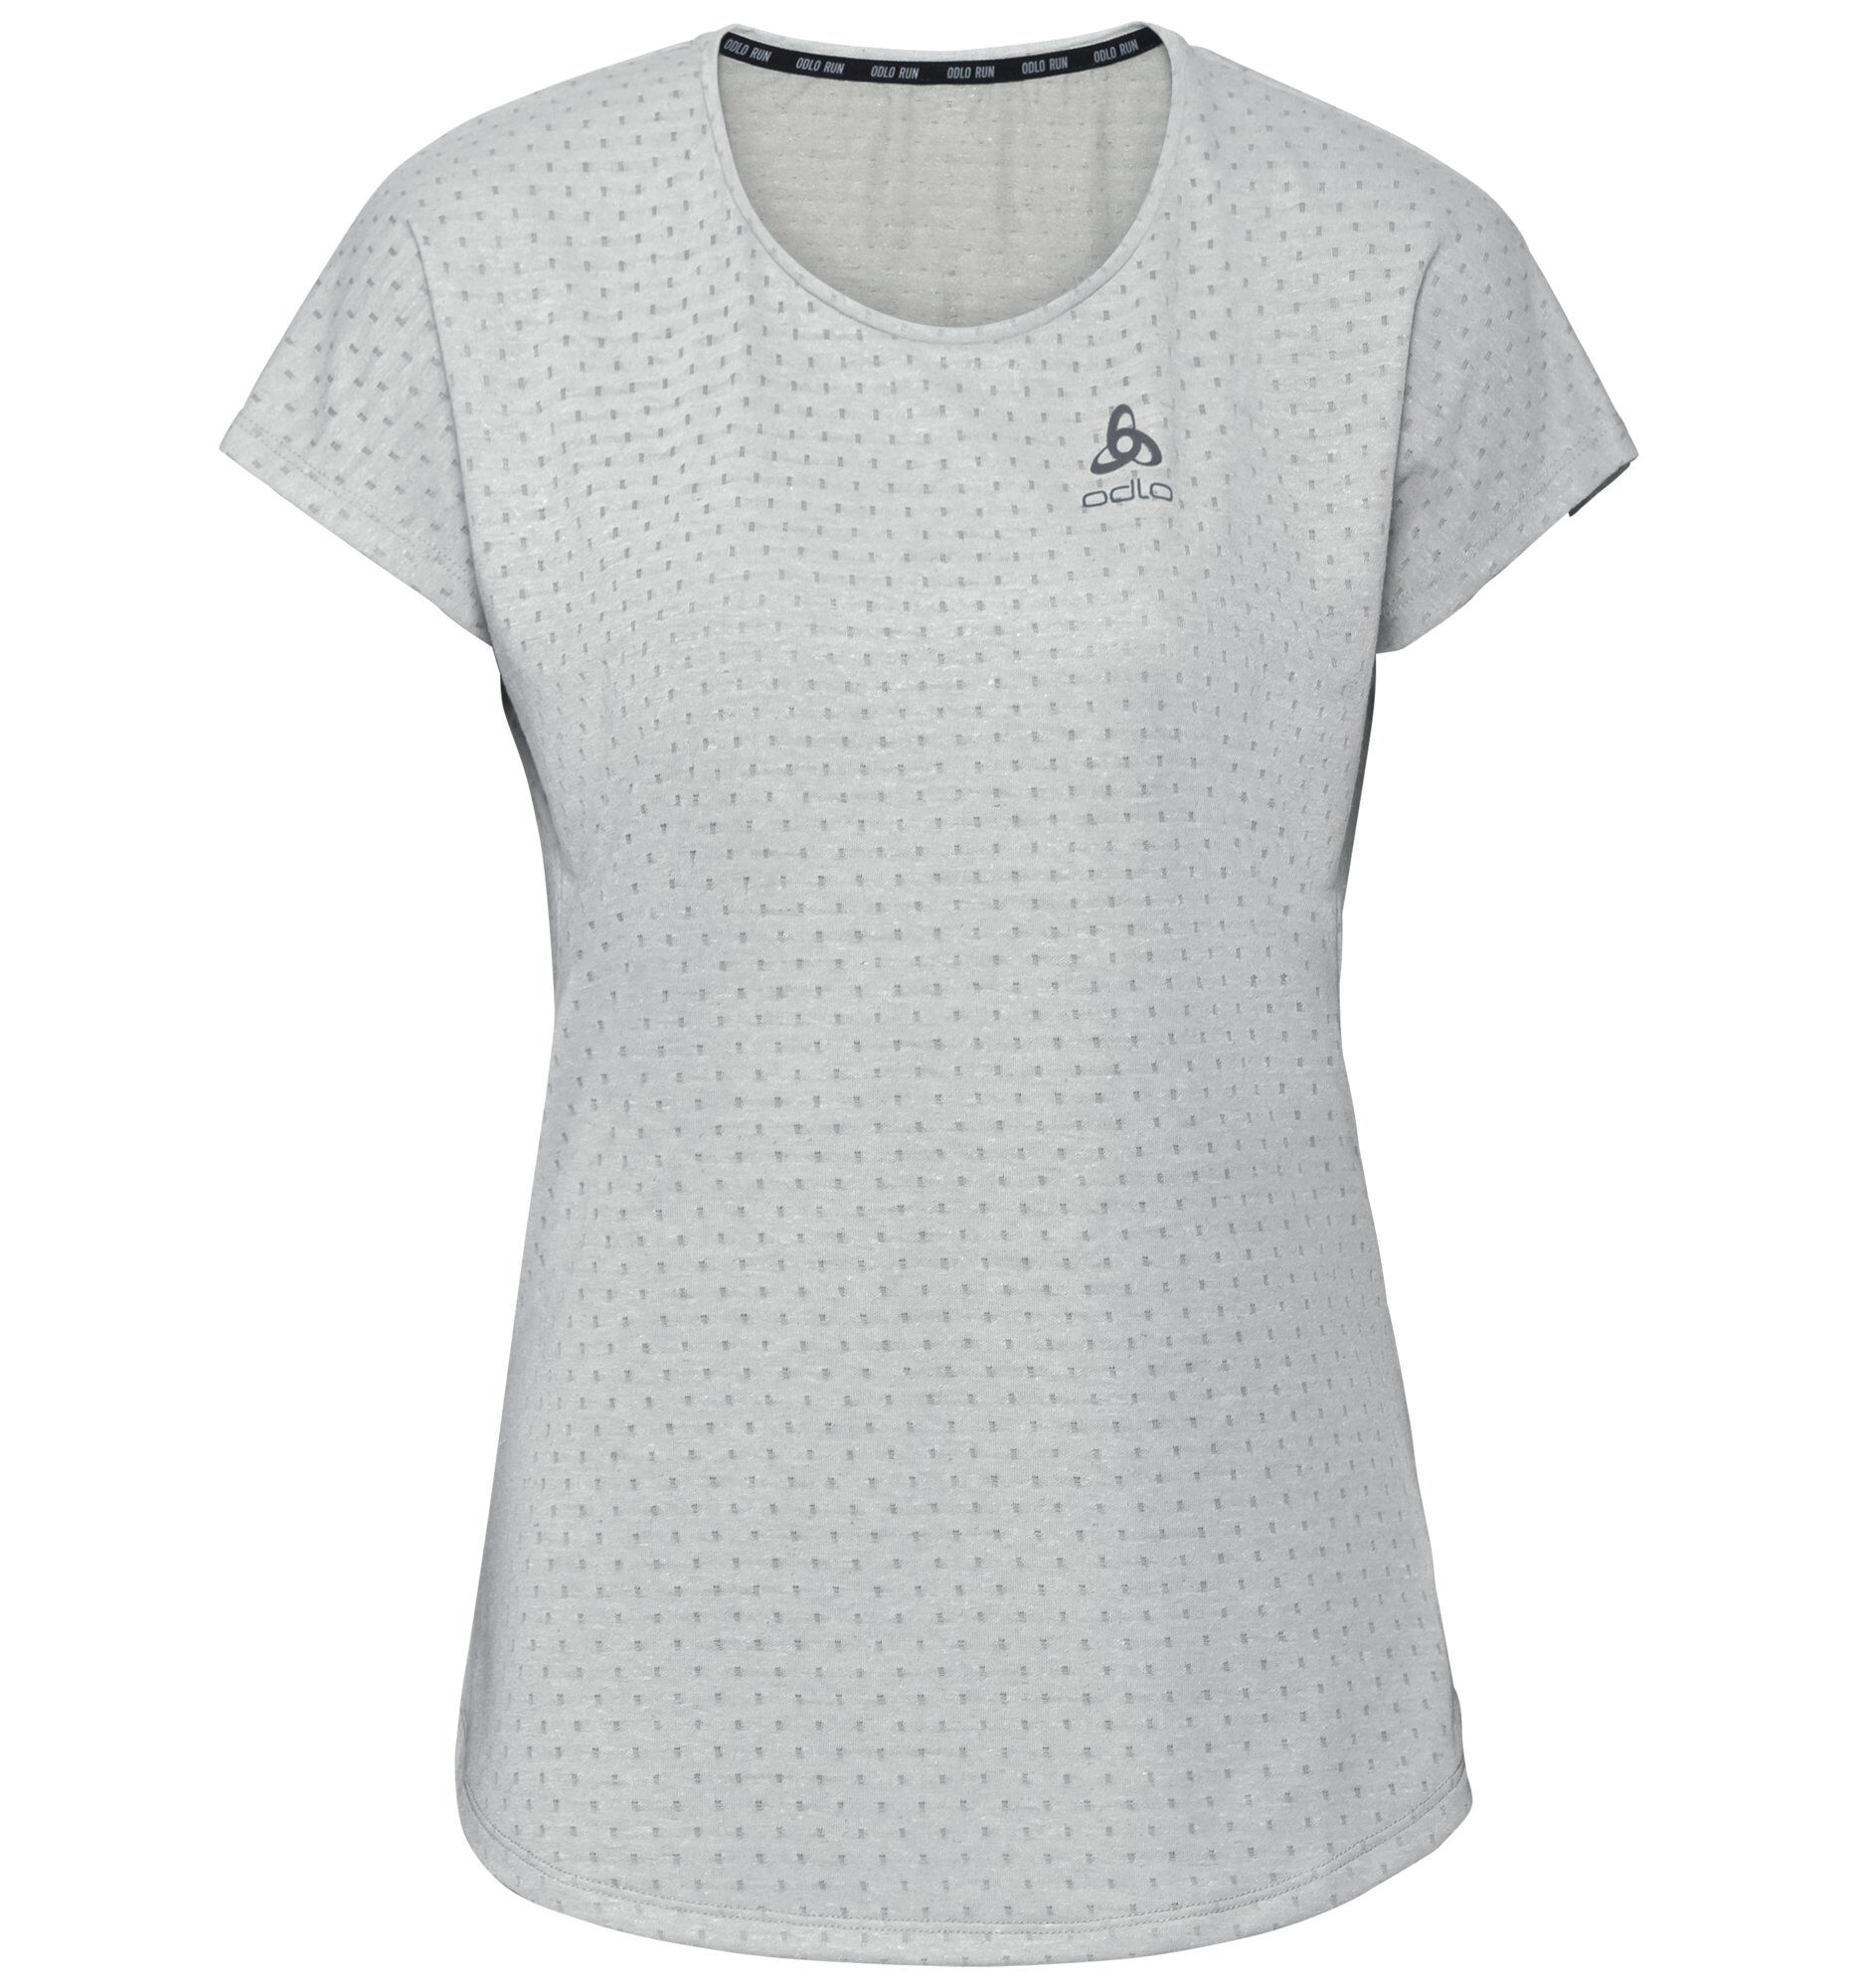 Odlo - Millennium Linencool - T-shirt - Women's